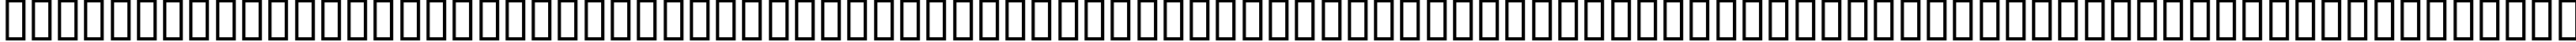 Пример написания русского алфавита шрифтом LOGO FONTS